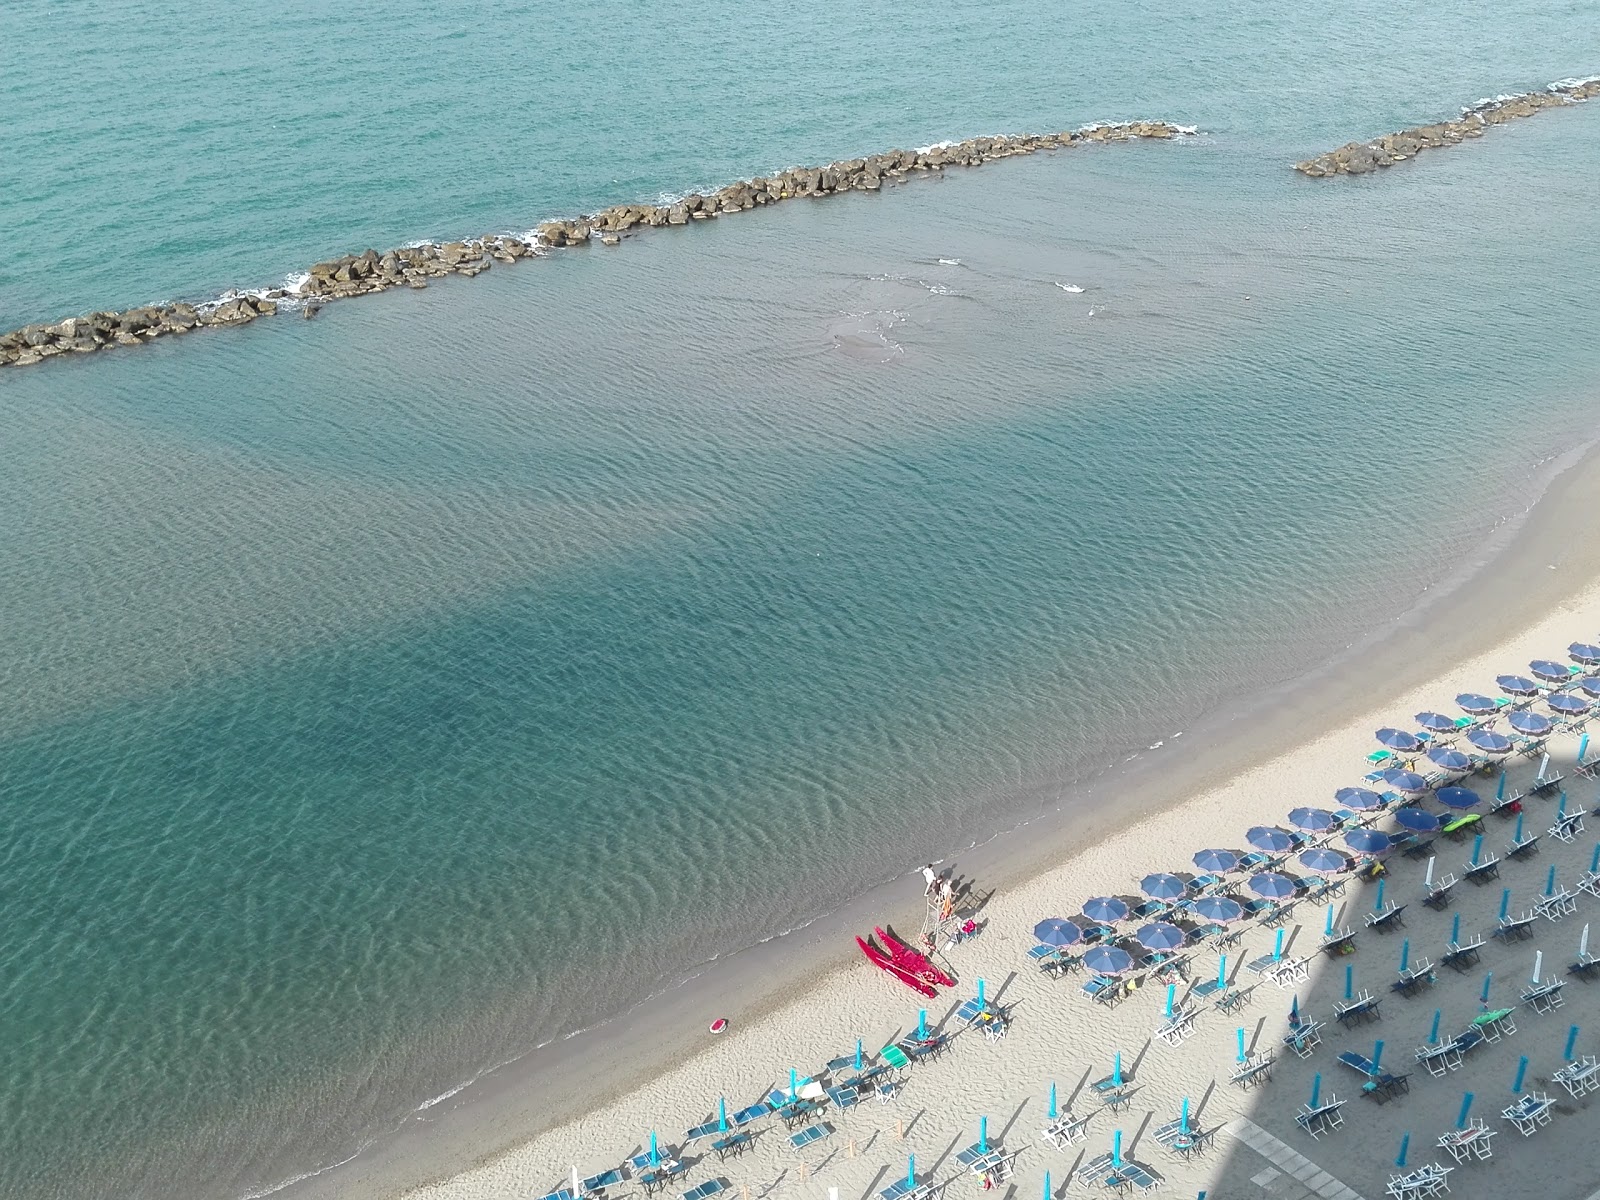 Zdjęcie Marina di Massa z powierzchnią niebieska woda